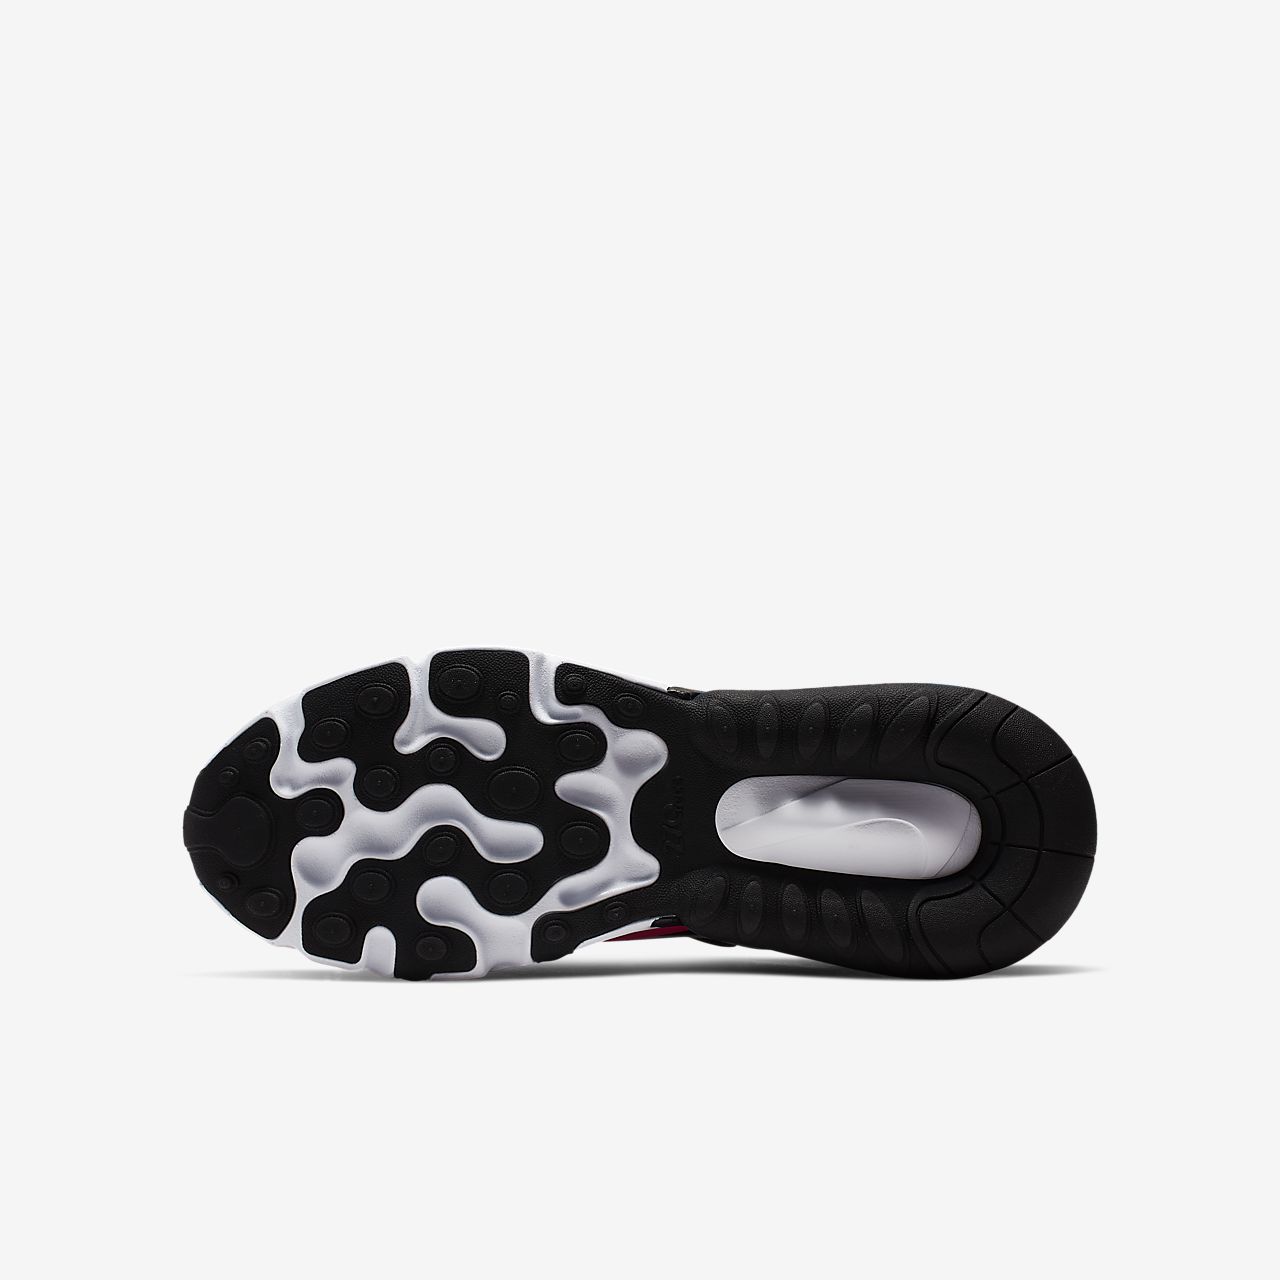 Nike Air Max 270 React - Sneakers - Sort/Pink/Lilla/Hvide | DK-72994